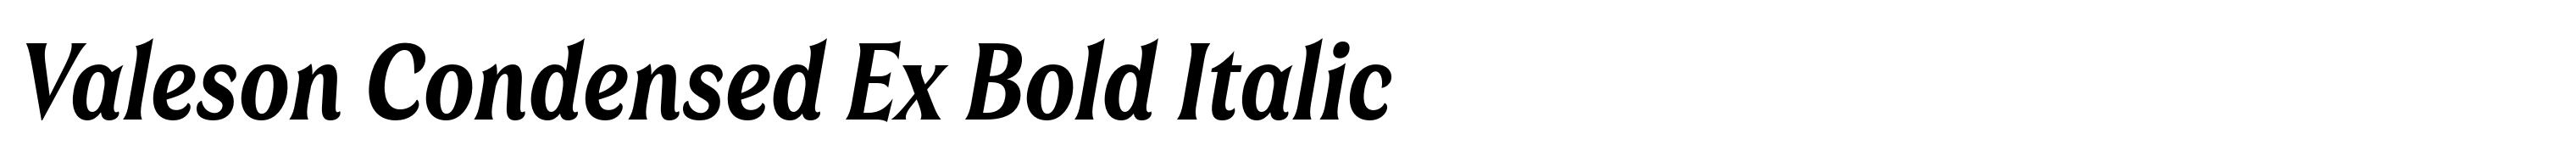 Valeson Condensed Ex Bold Italic